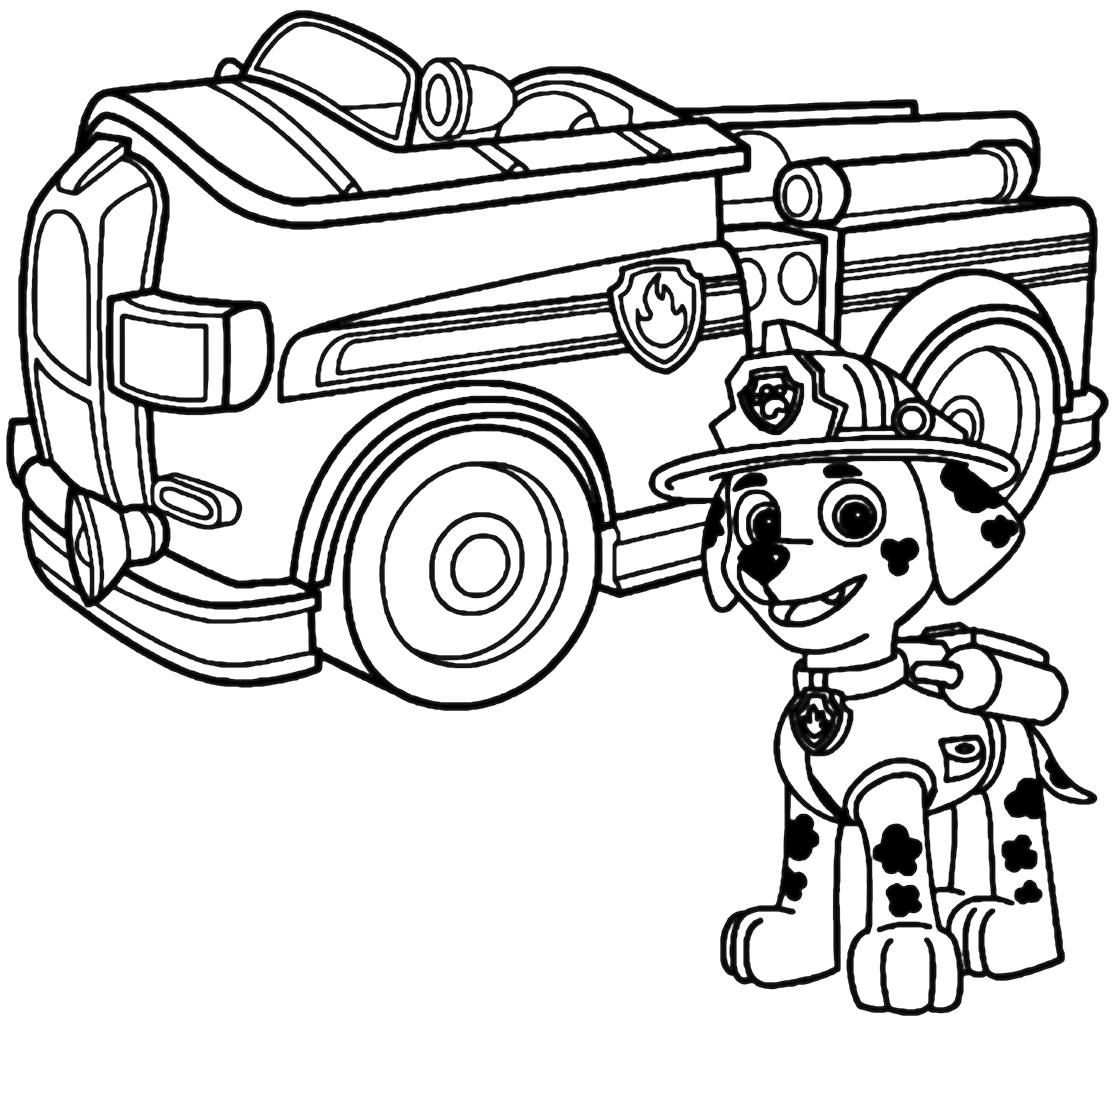 Pagina da colorare di Paw Patrol Marshall con camion dei pompieri